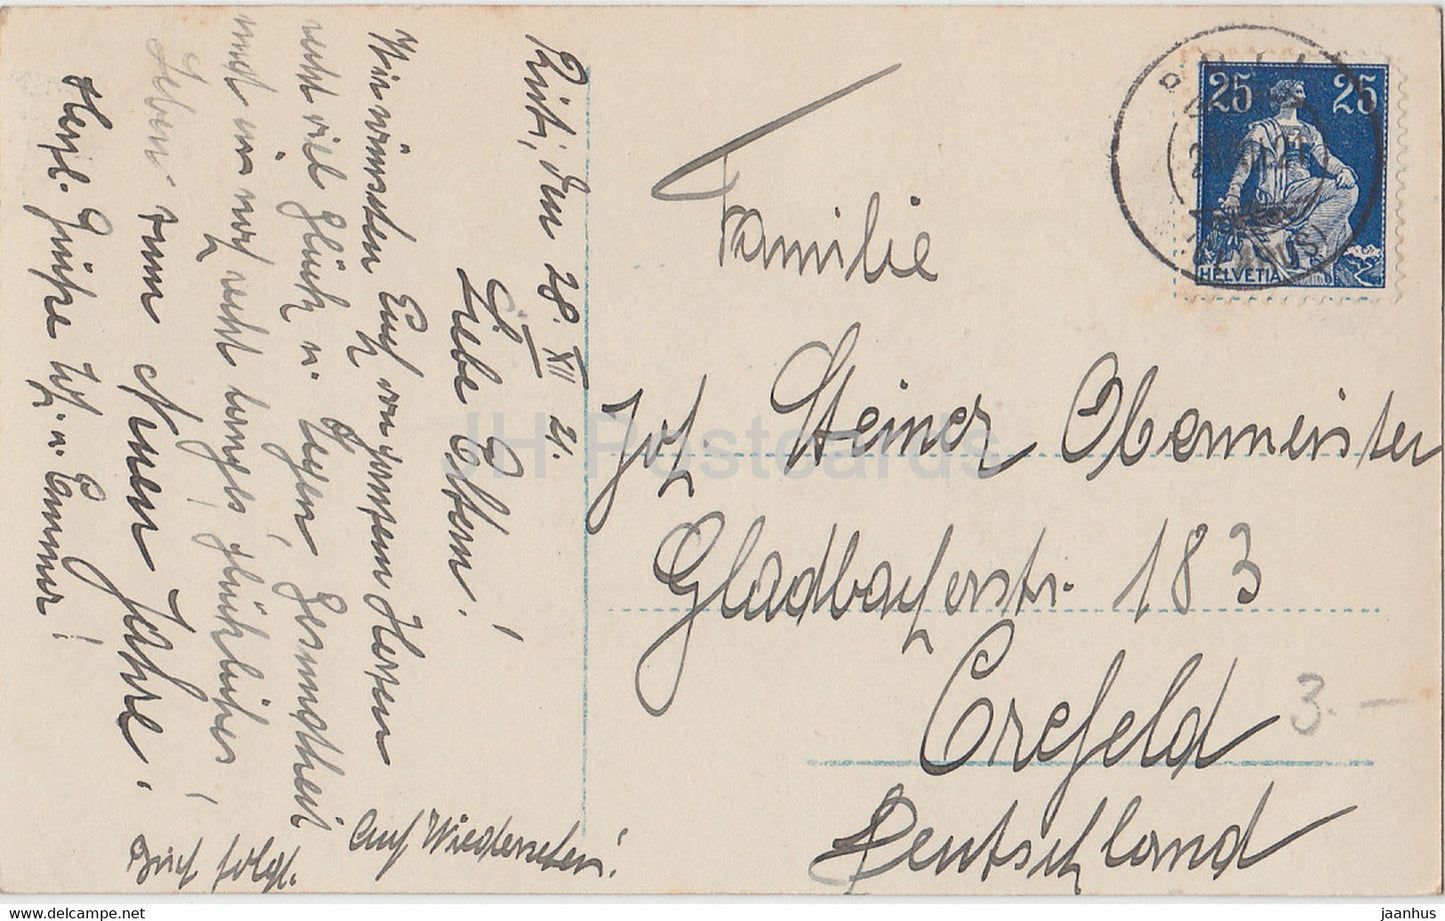 Neujahrsgrußkarte - Die besten Wünsche zum neuen Jahre - Kinder NPG 7233/6 - alte Postkarte - 1921 - Deutschland - gebraucht